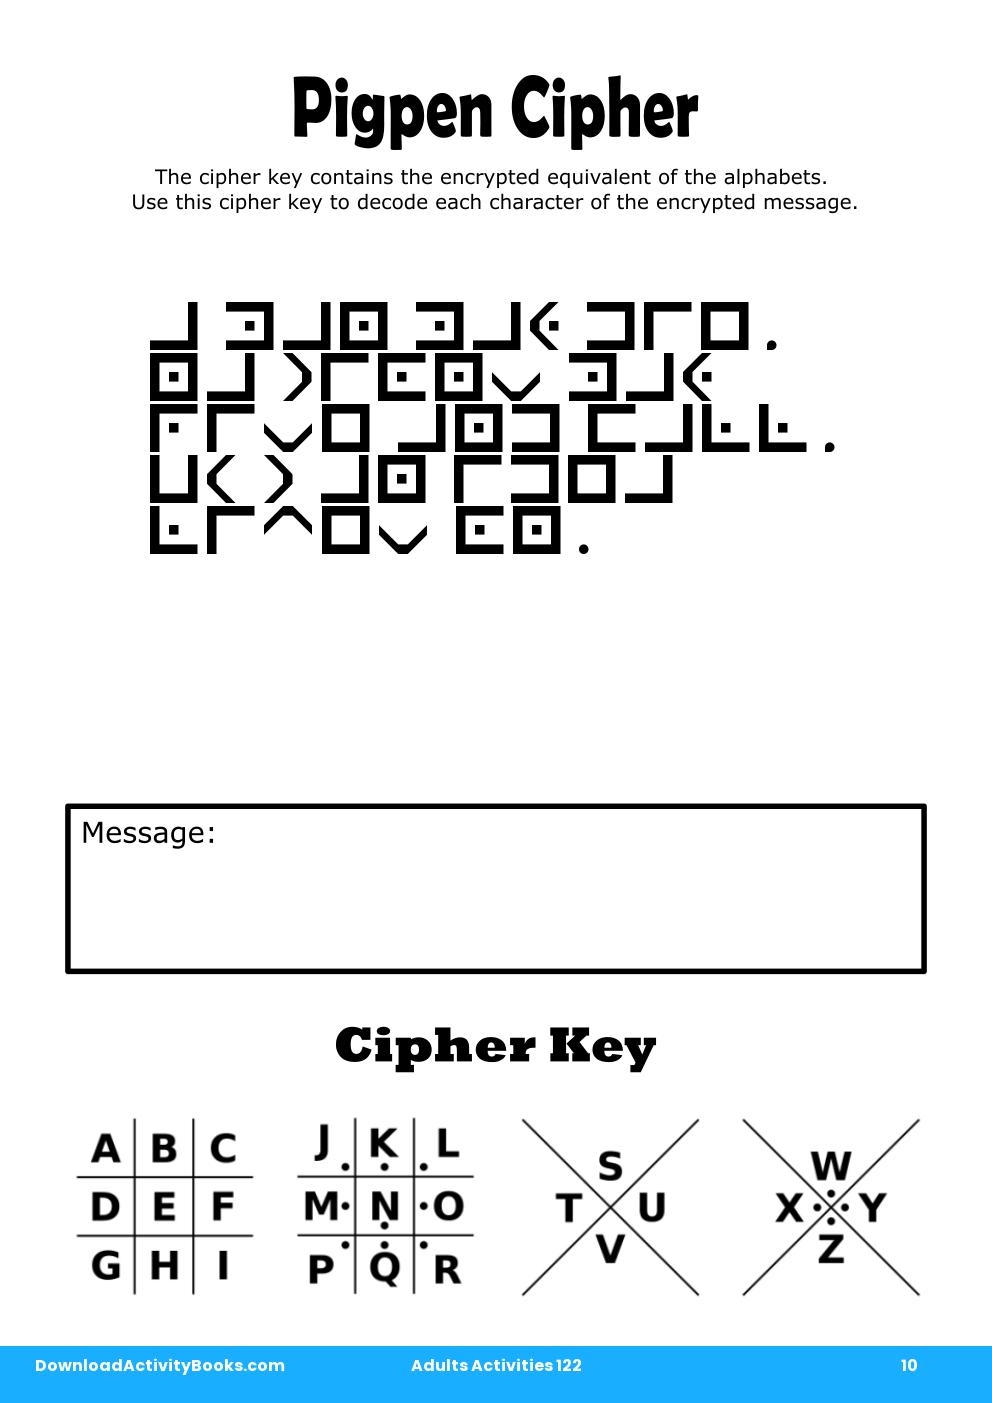 Pigpen Cipher in Adults Activities 122